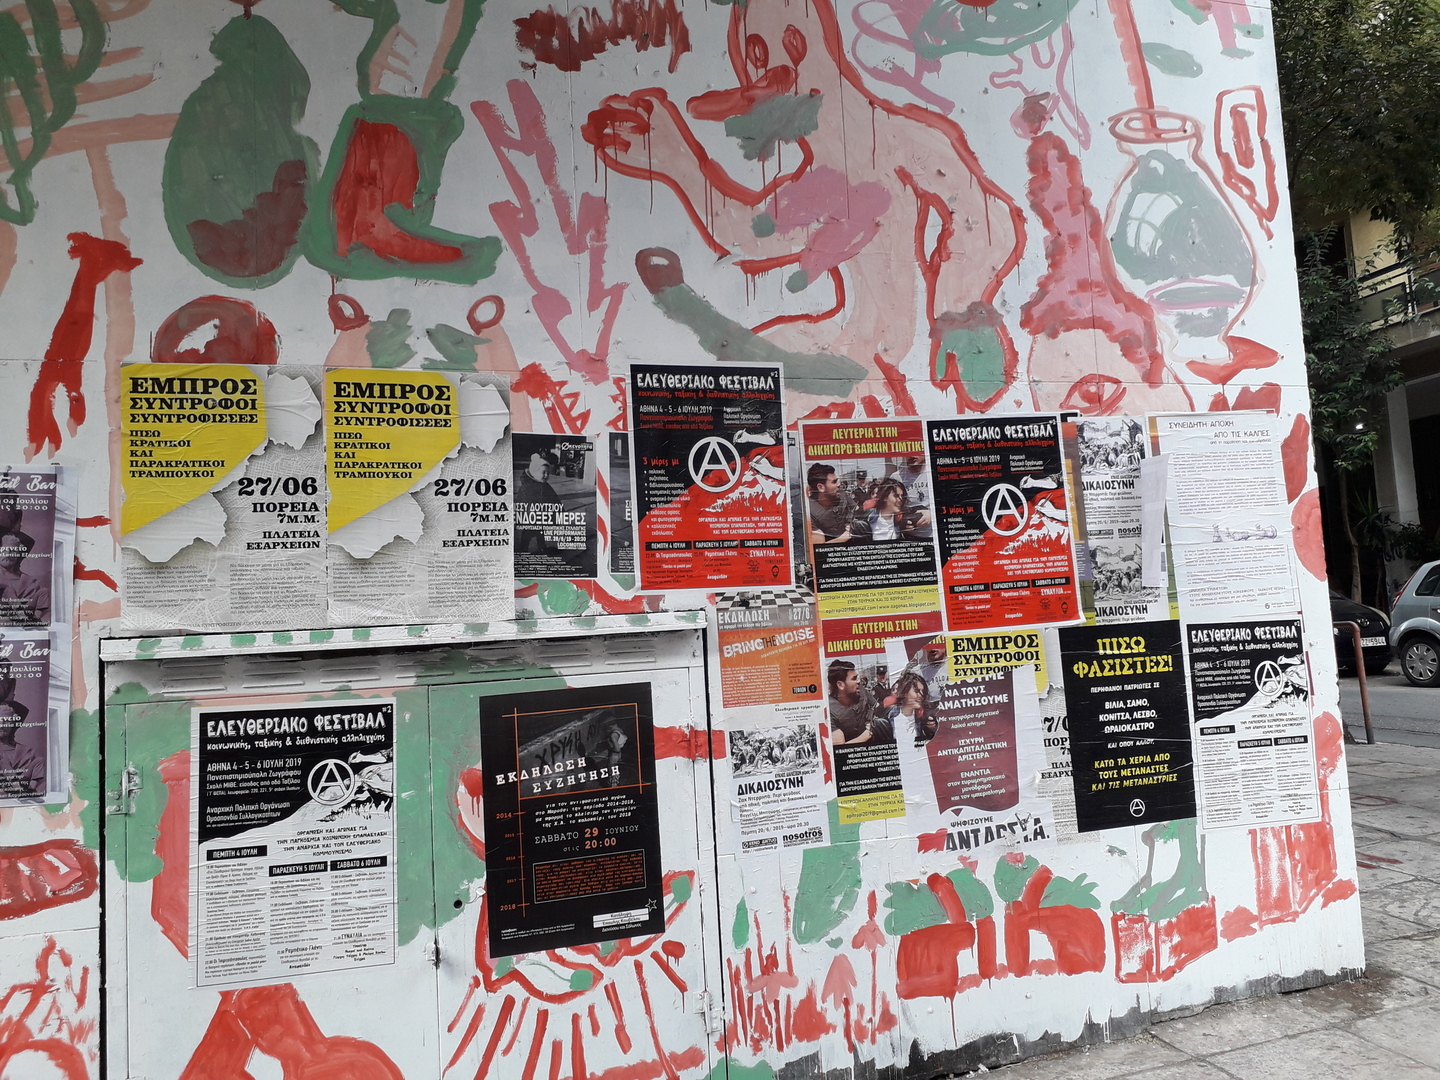 Image 5 : Mur avec des peintures et des affiches dont la plupart des contenus sont anarchistes